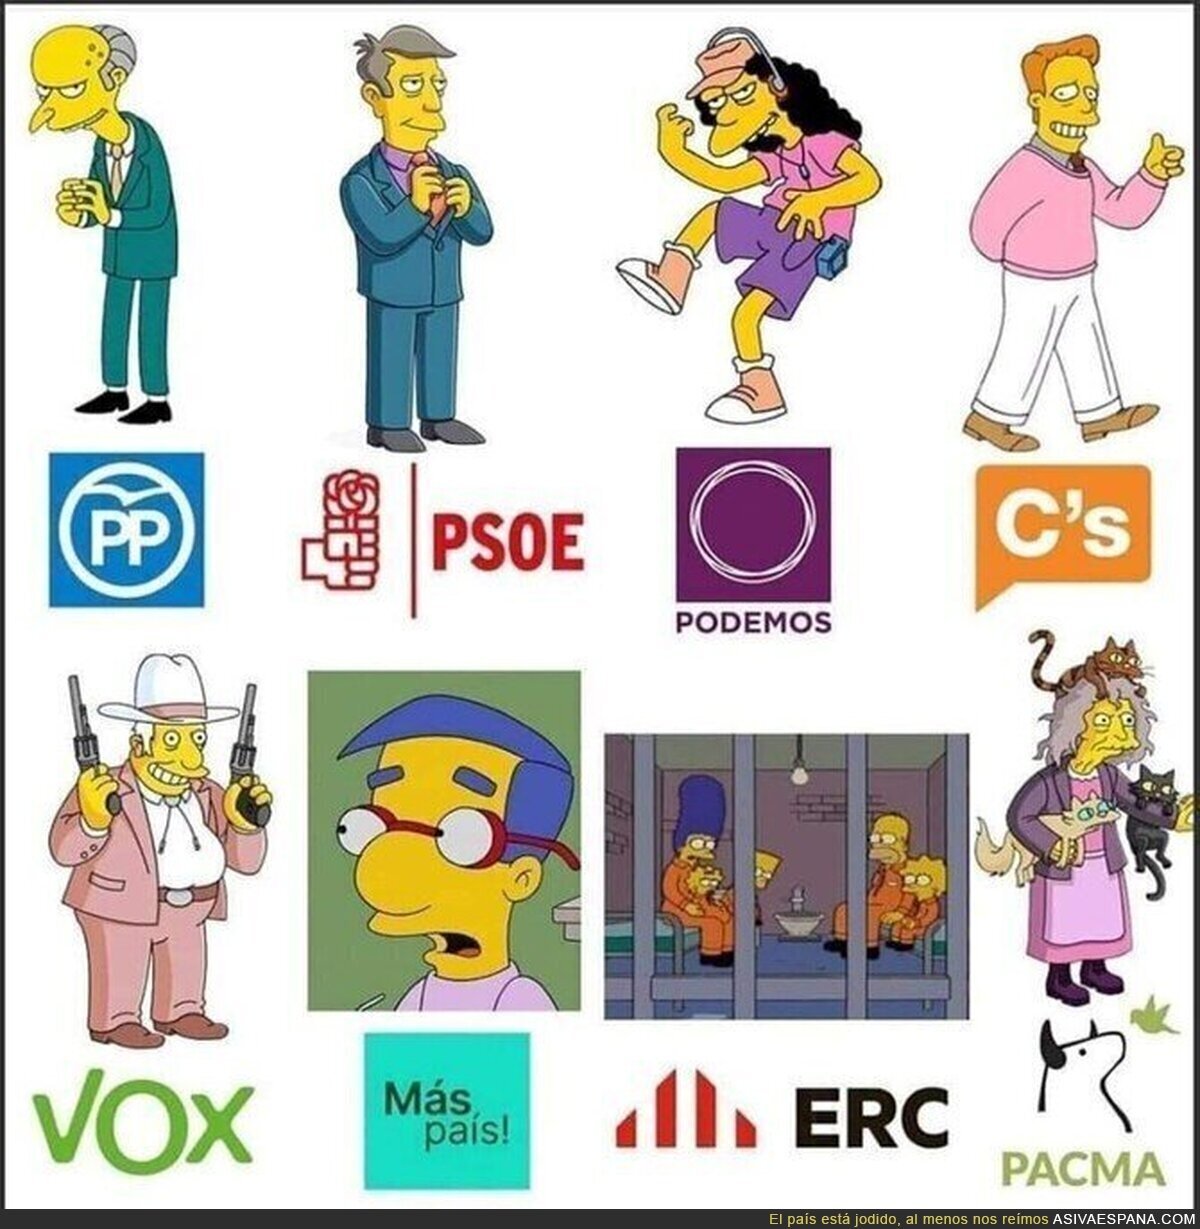 Los partidos políticos según Los Simpson